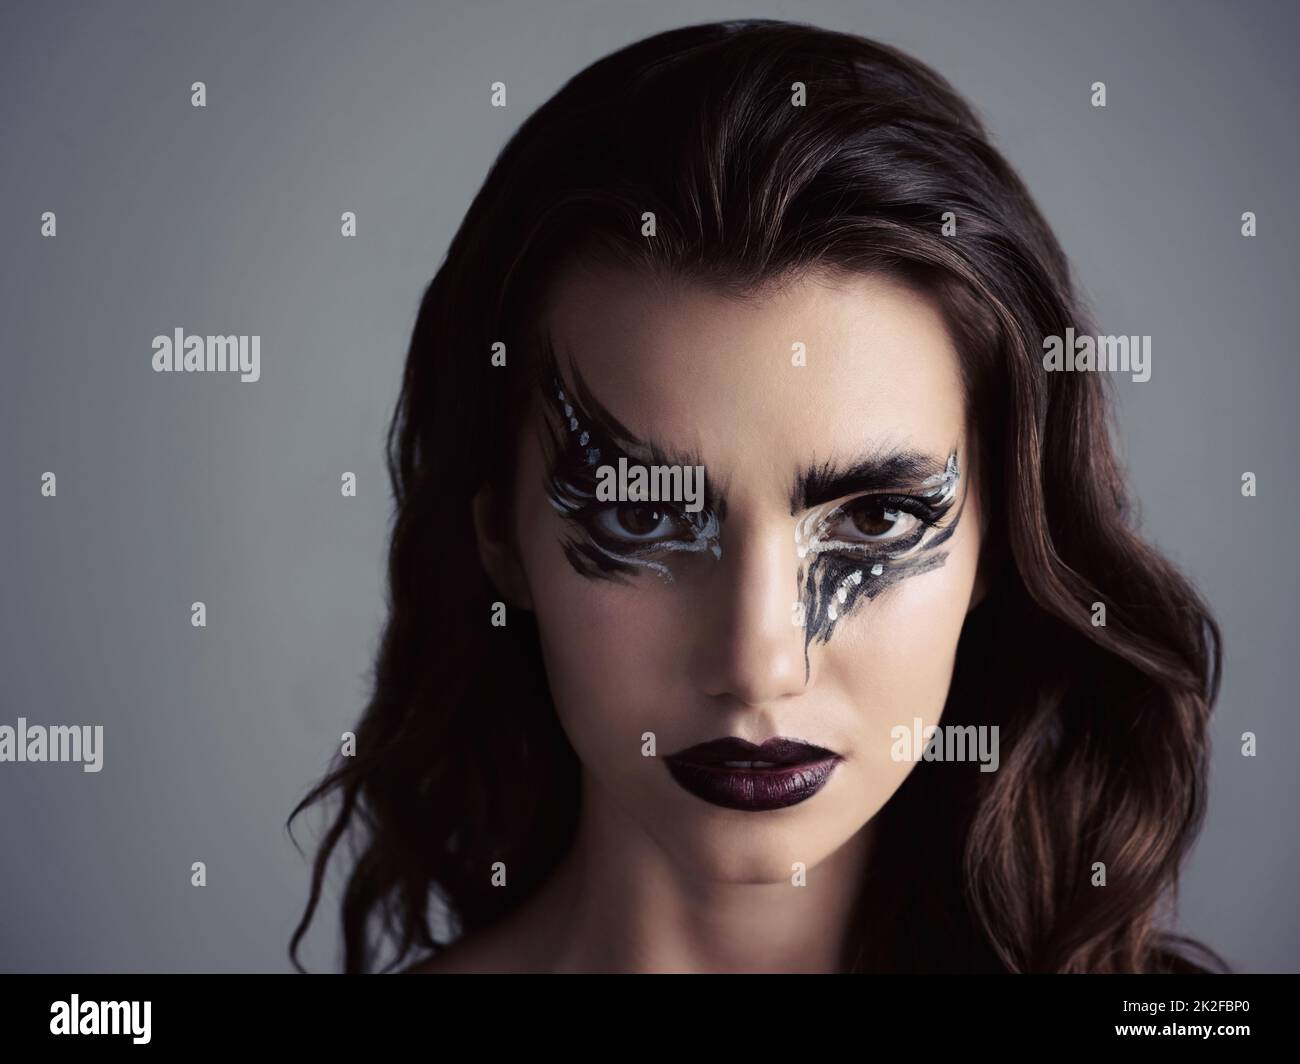 Kommt auf die dunkle Seite. Studio-Aufnahme einer attraktiven jungen Frau mit auffälligem Make-up. Stockfoto